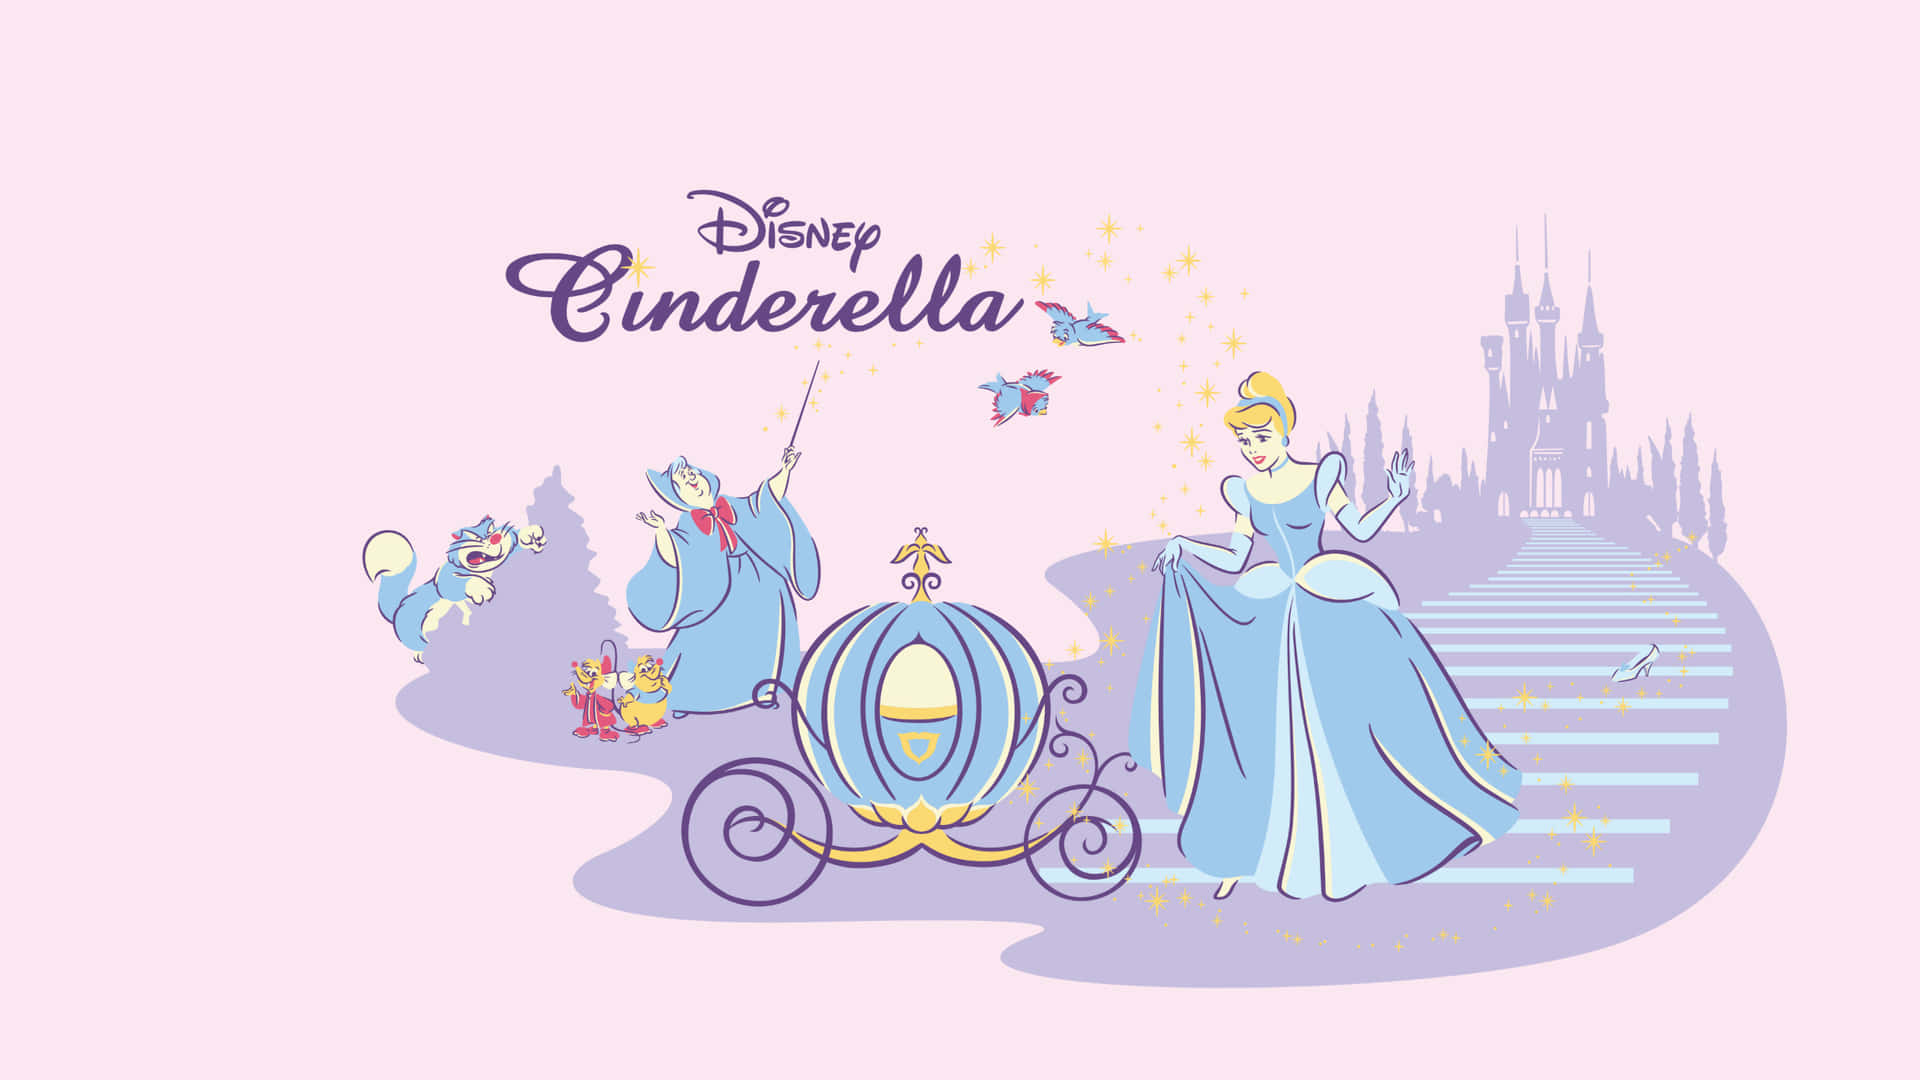 Cinderella flygter fra sin stedmor klokken tolv.